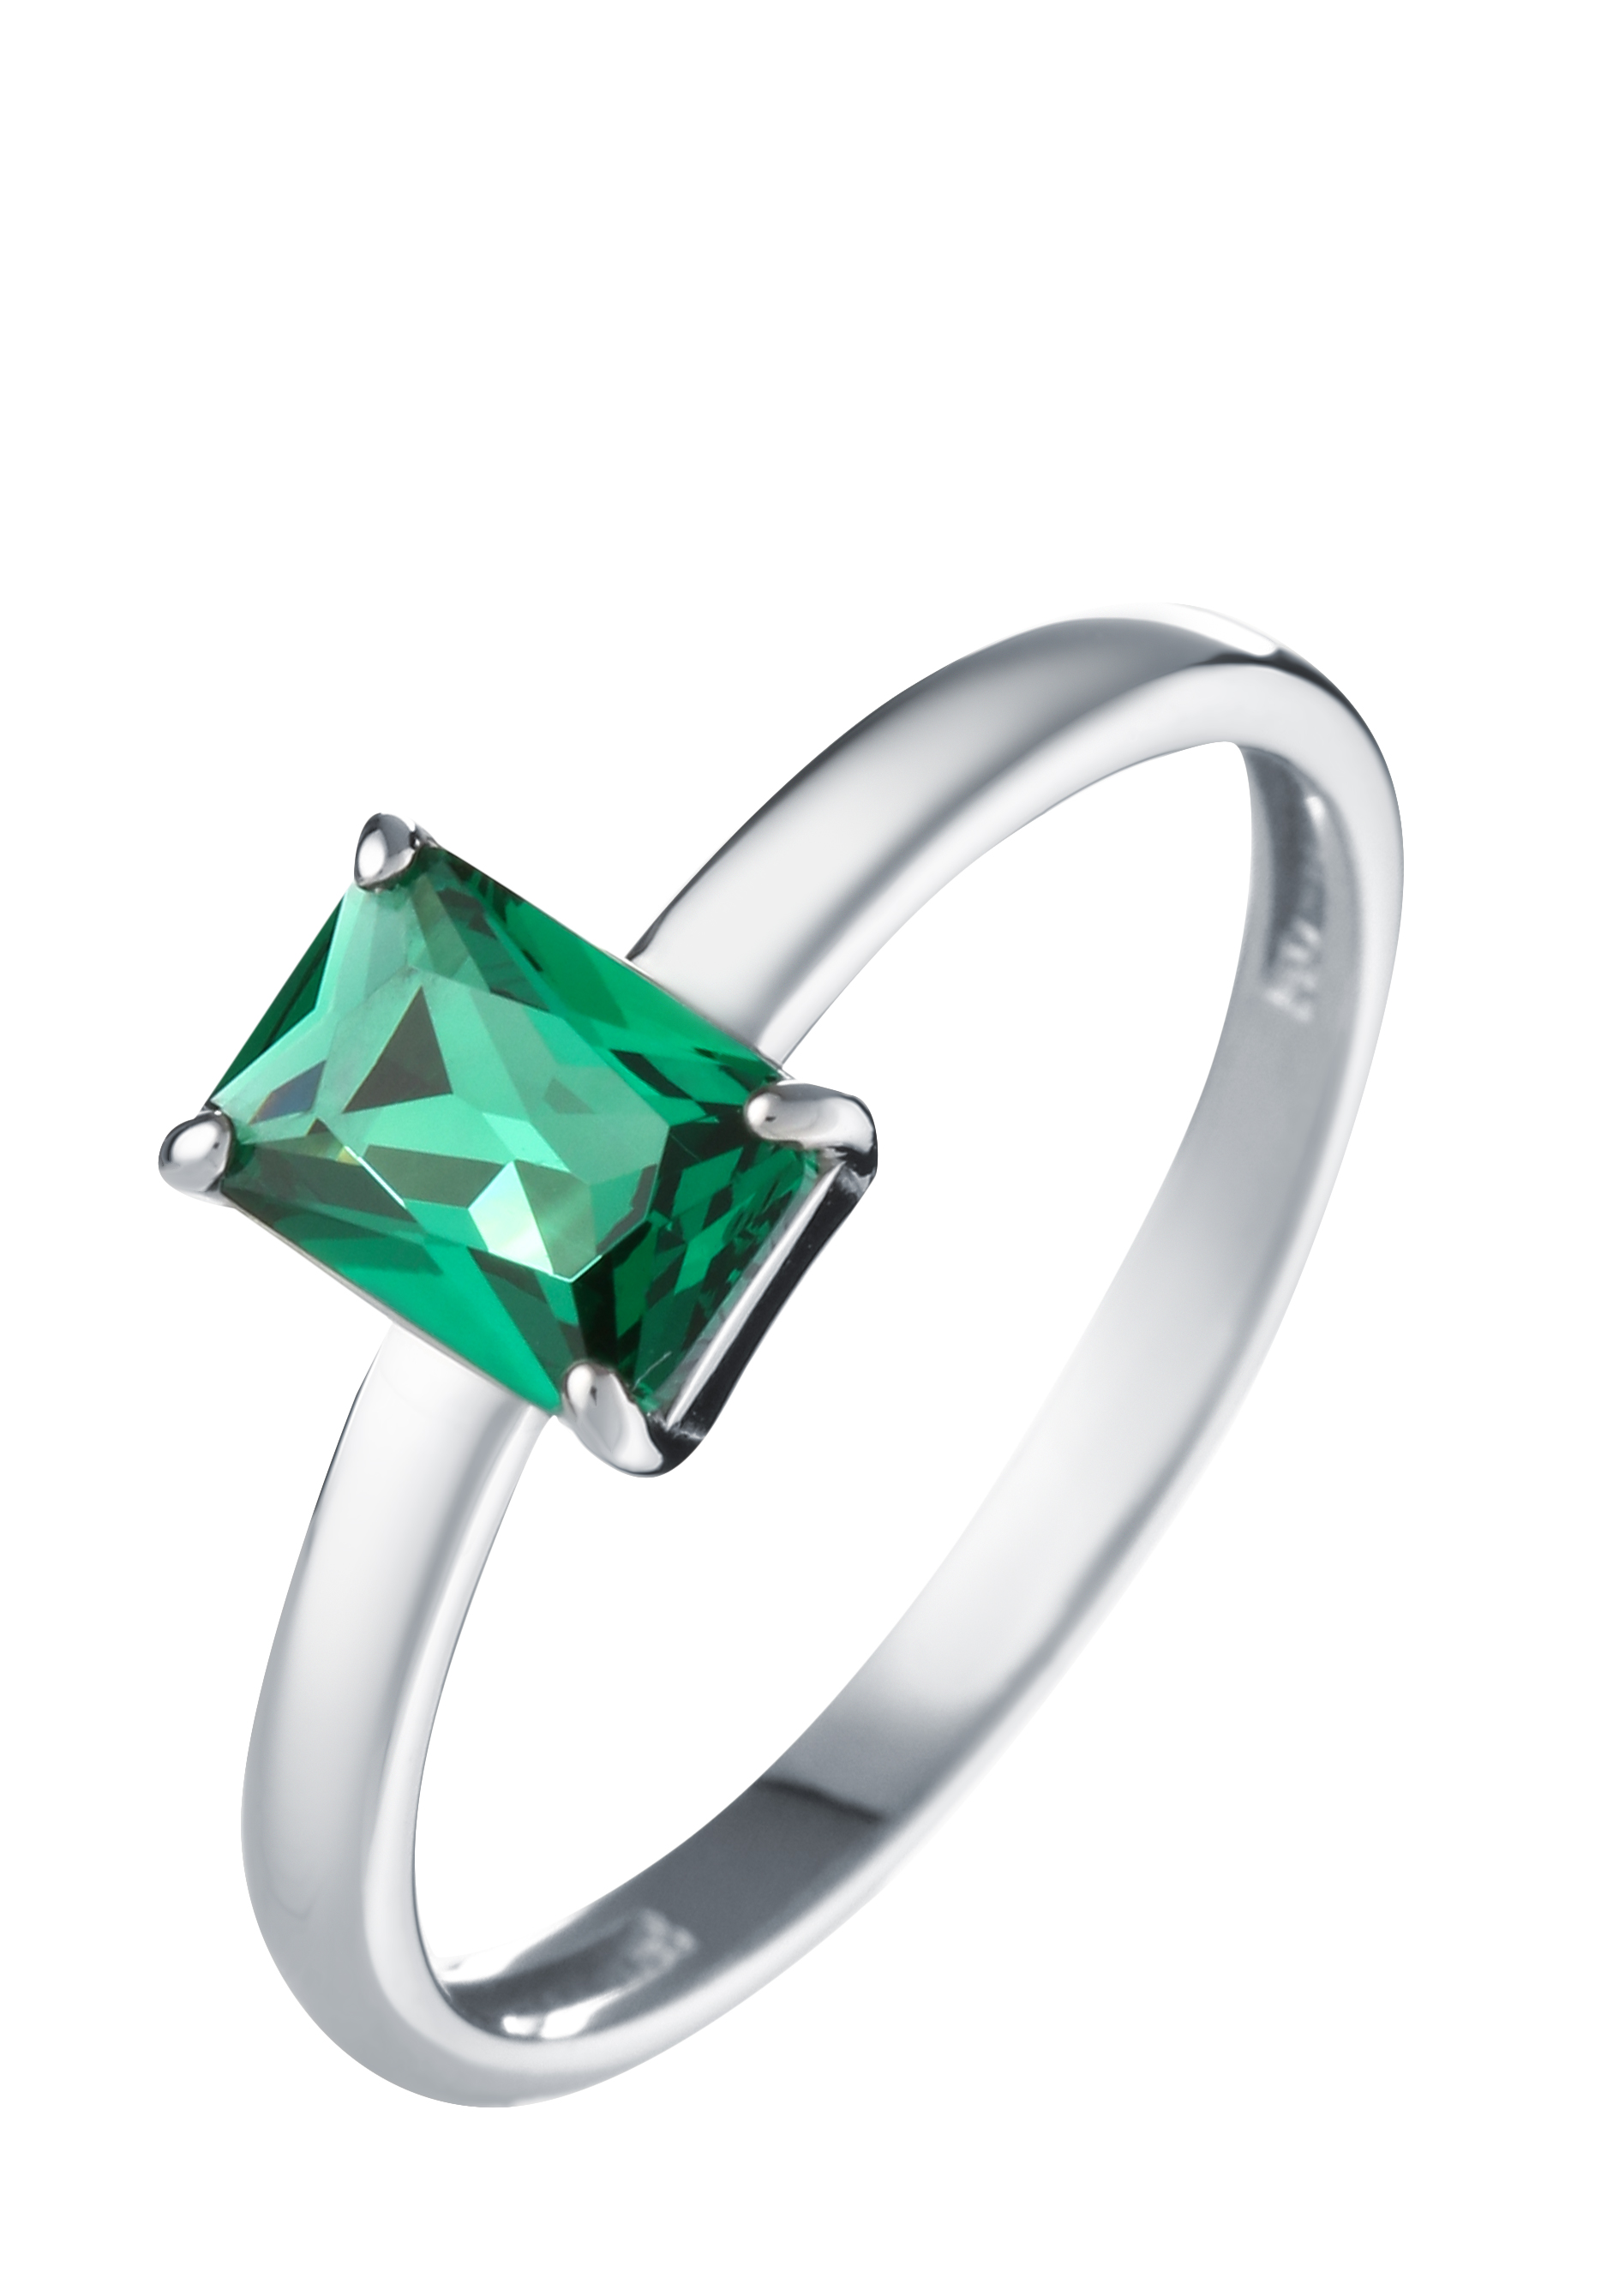 Кольцо серебряное "Магическое сияние" АЛЬКОР, цвет зеленый, размер 18 солитер - фото 1